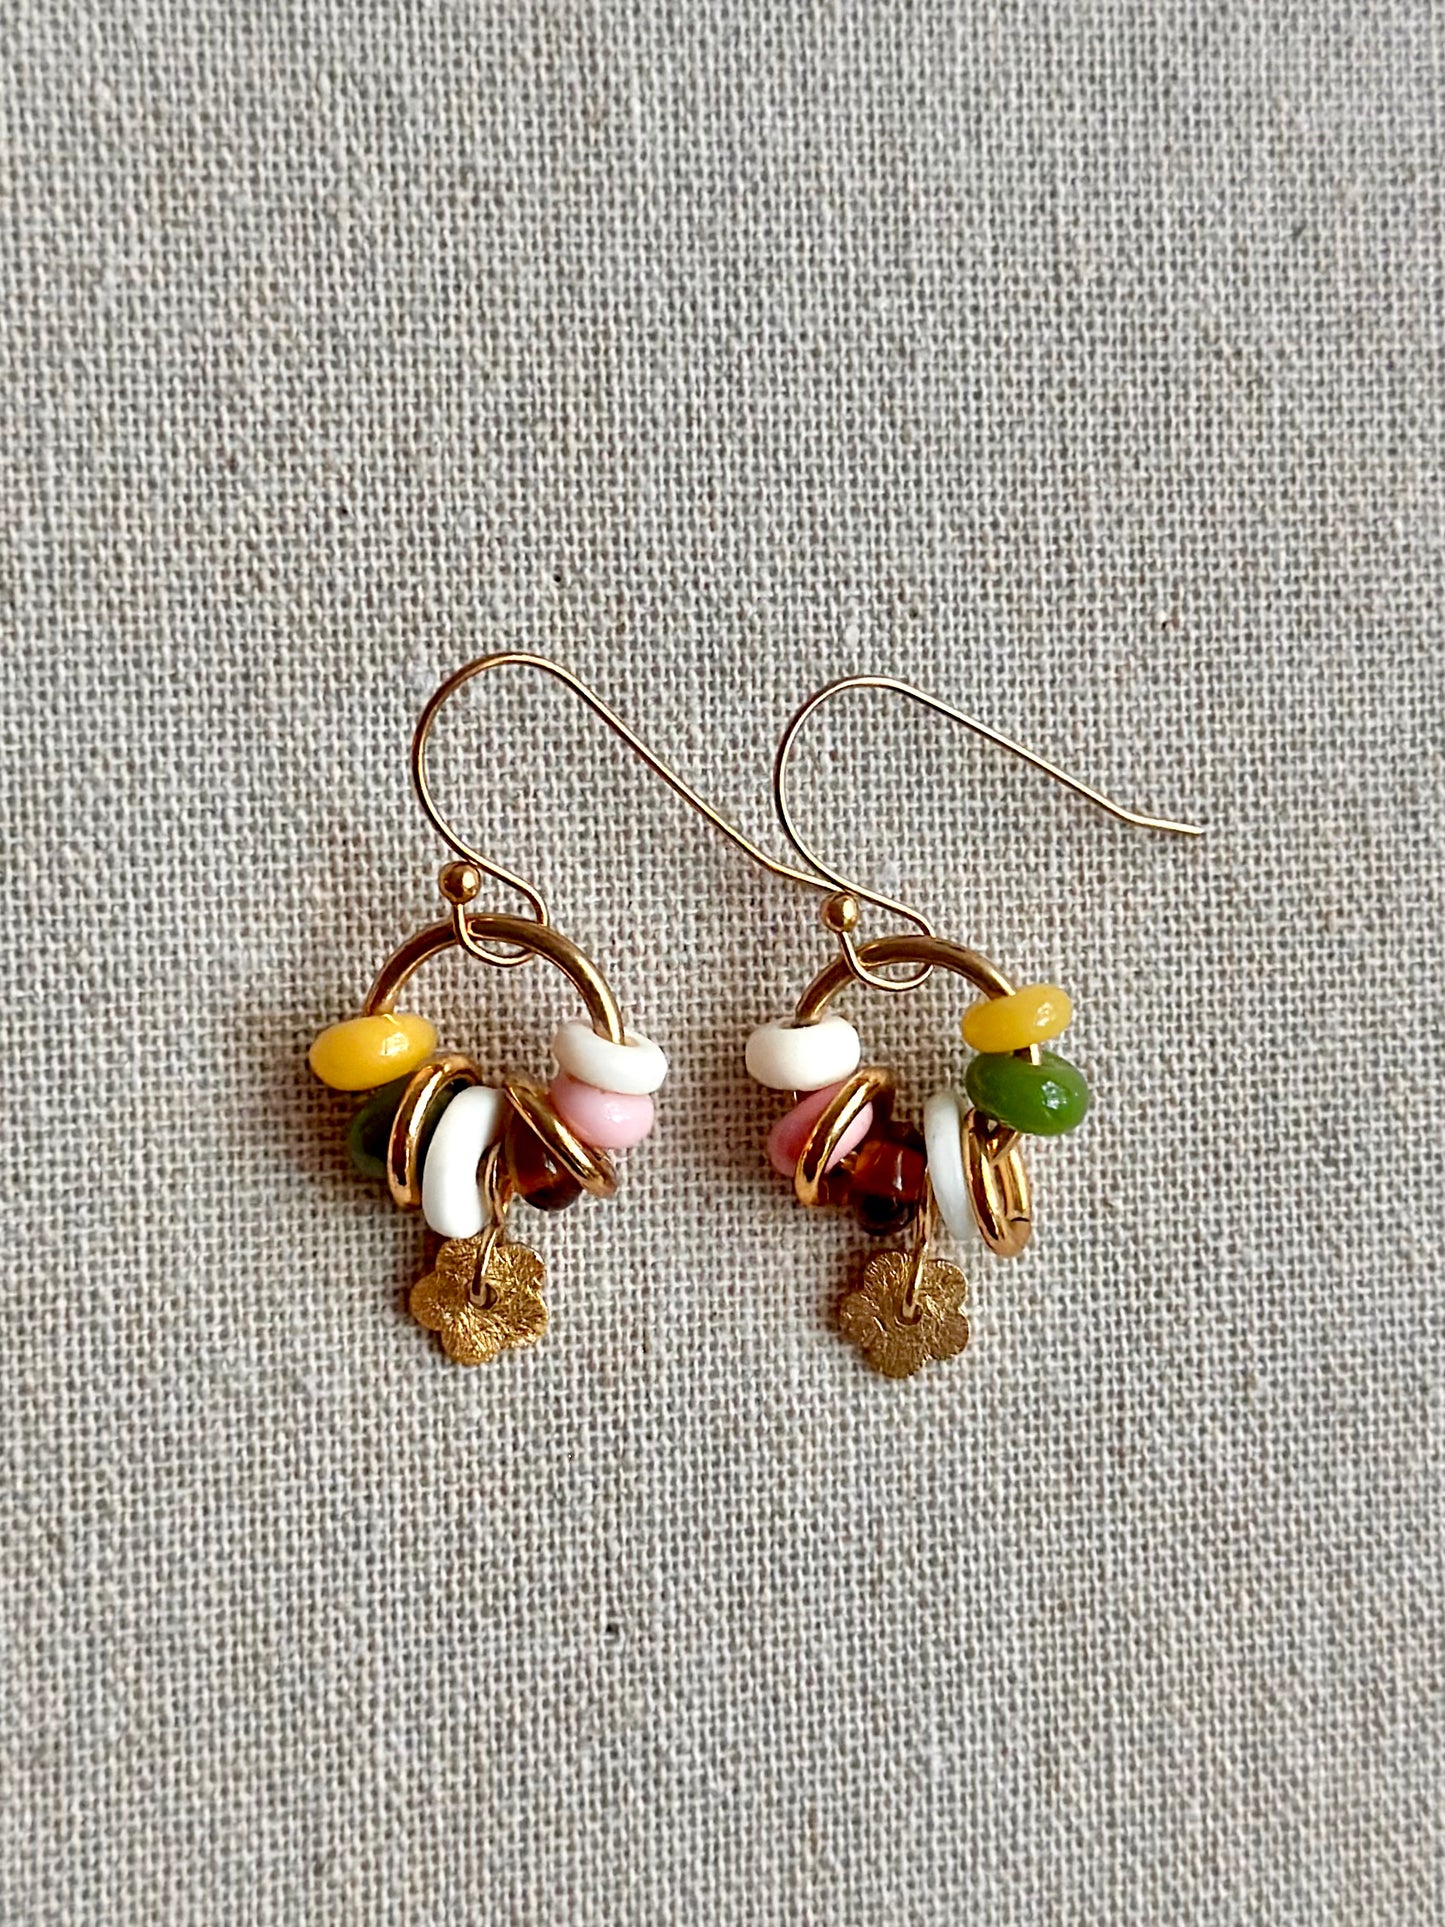 Daisy earrings in autumnal tones